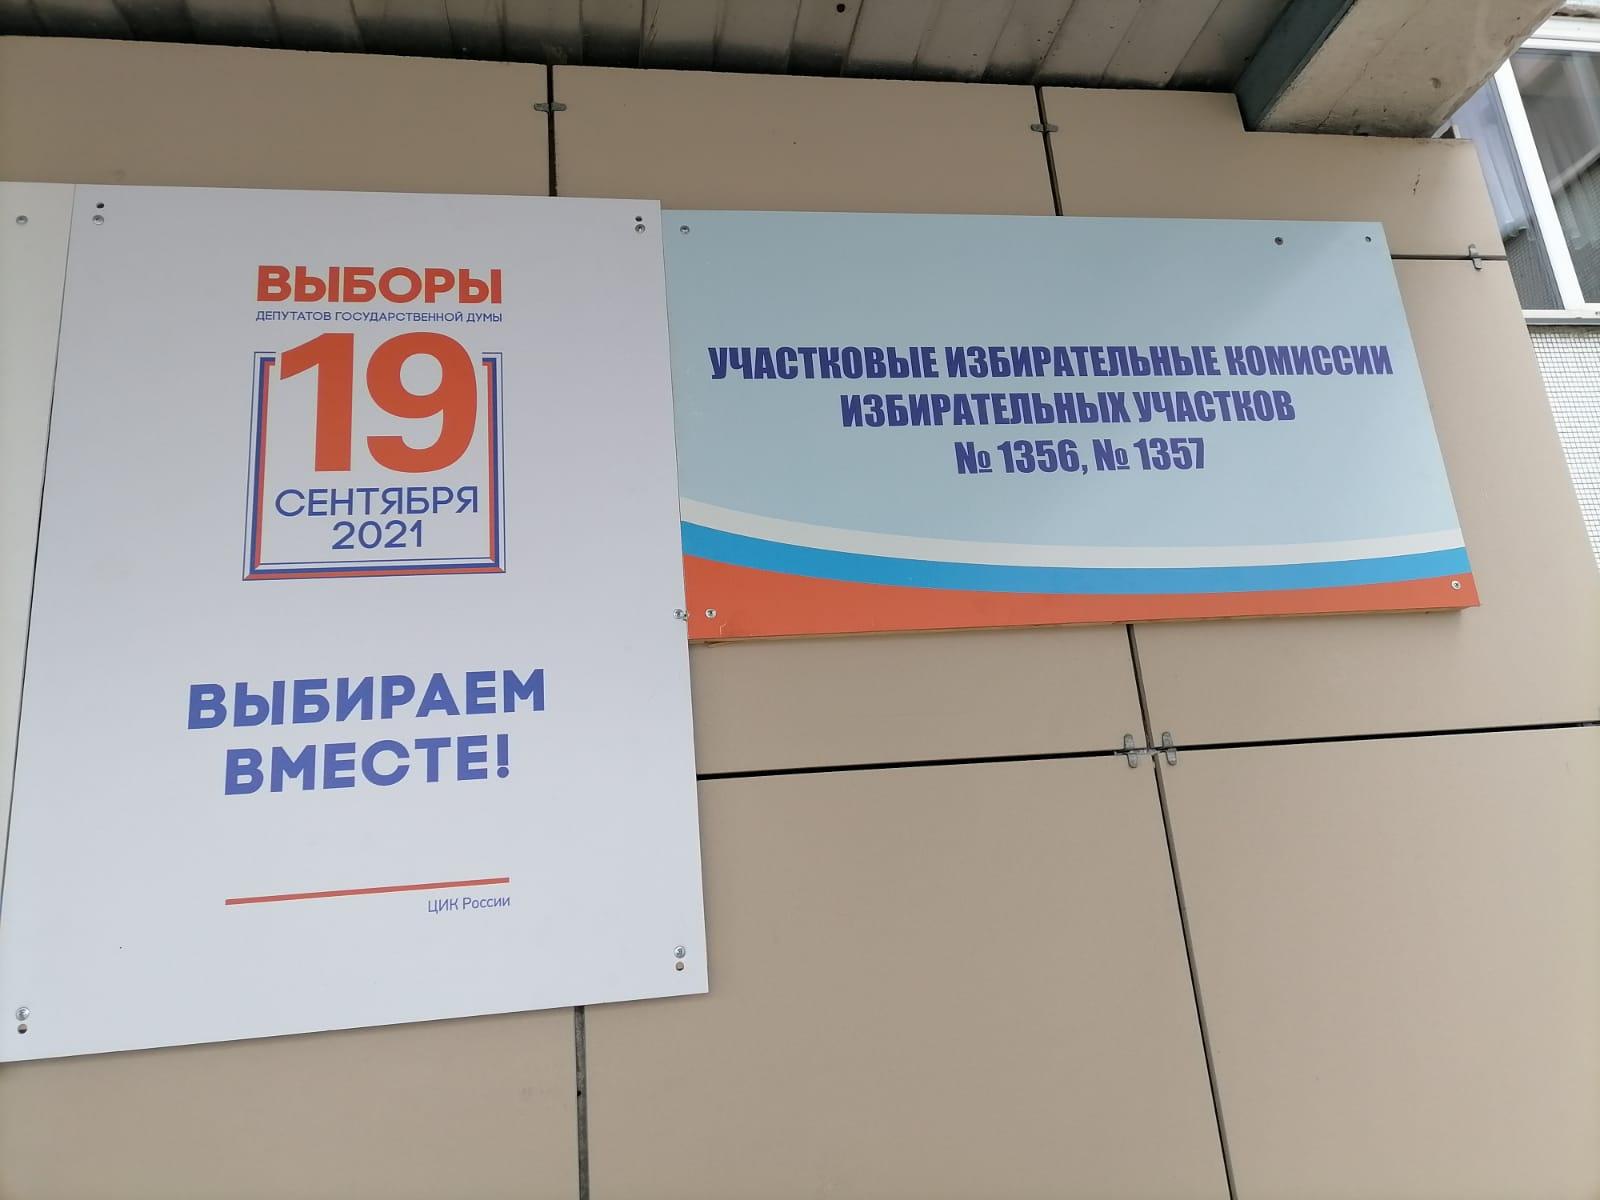 Фото Выборы в Новосибирске: онлайн дня голосования за депутатов Госдумы 19 сентября 2021 года 54